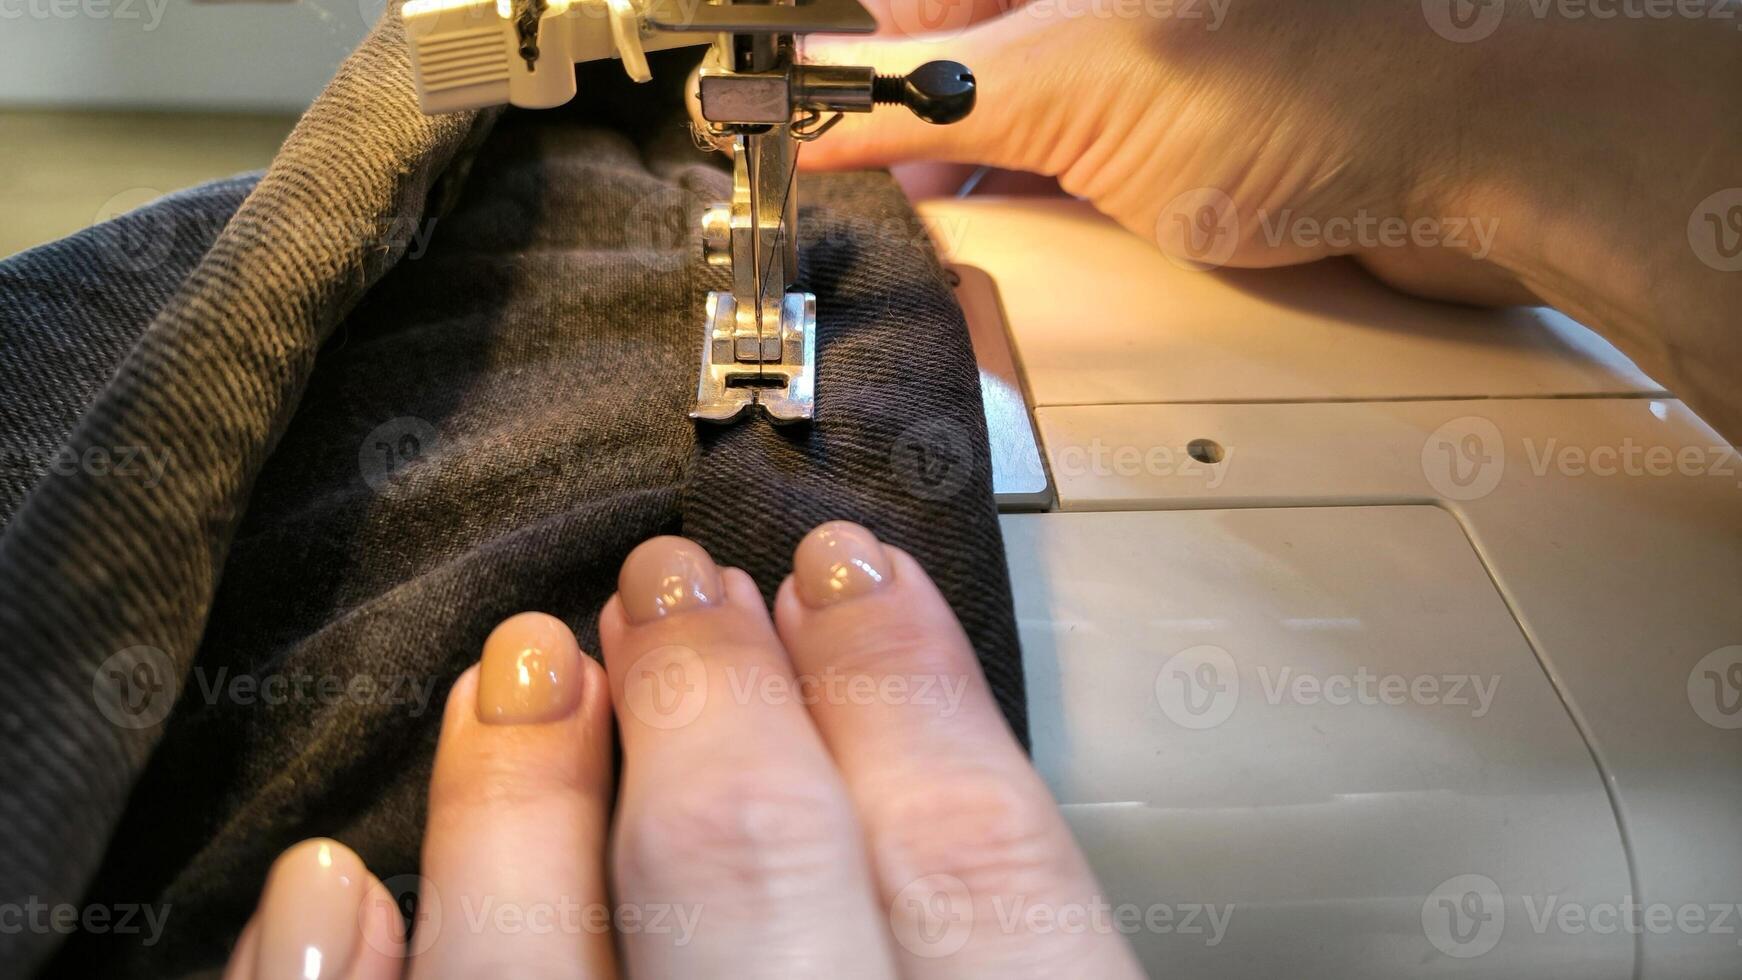 processo do de costura dentro uma de costura máquina costurar mulher mãos manicure Preto têxtil jeans jeans fabricação fechar acima costureira dentro oficina tecido roupas fazer Projeto passatempo feito à mão trabalhando bordado foto